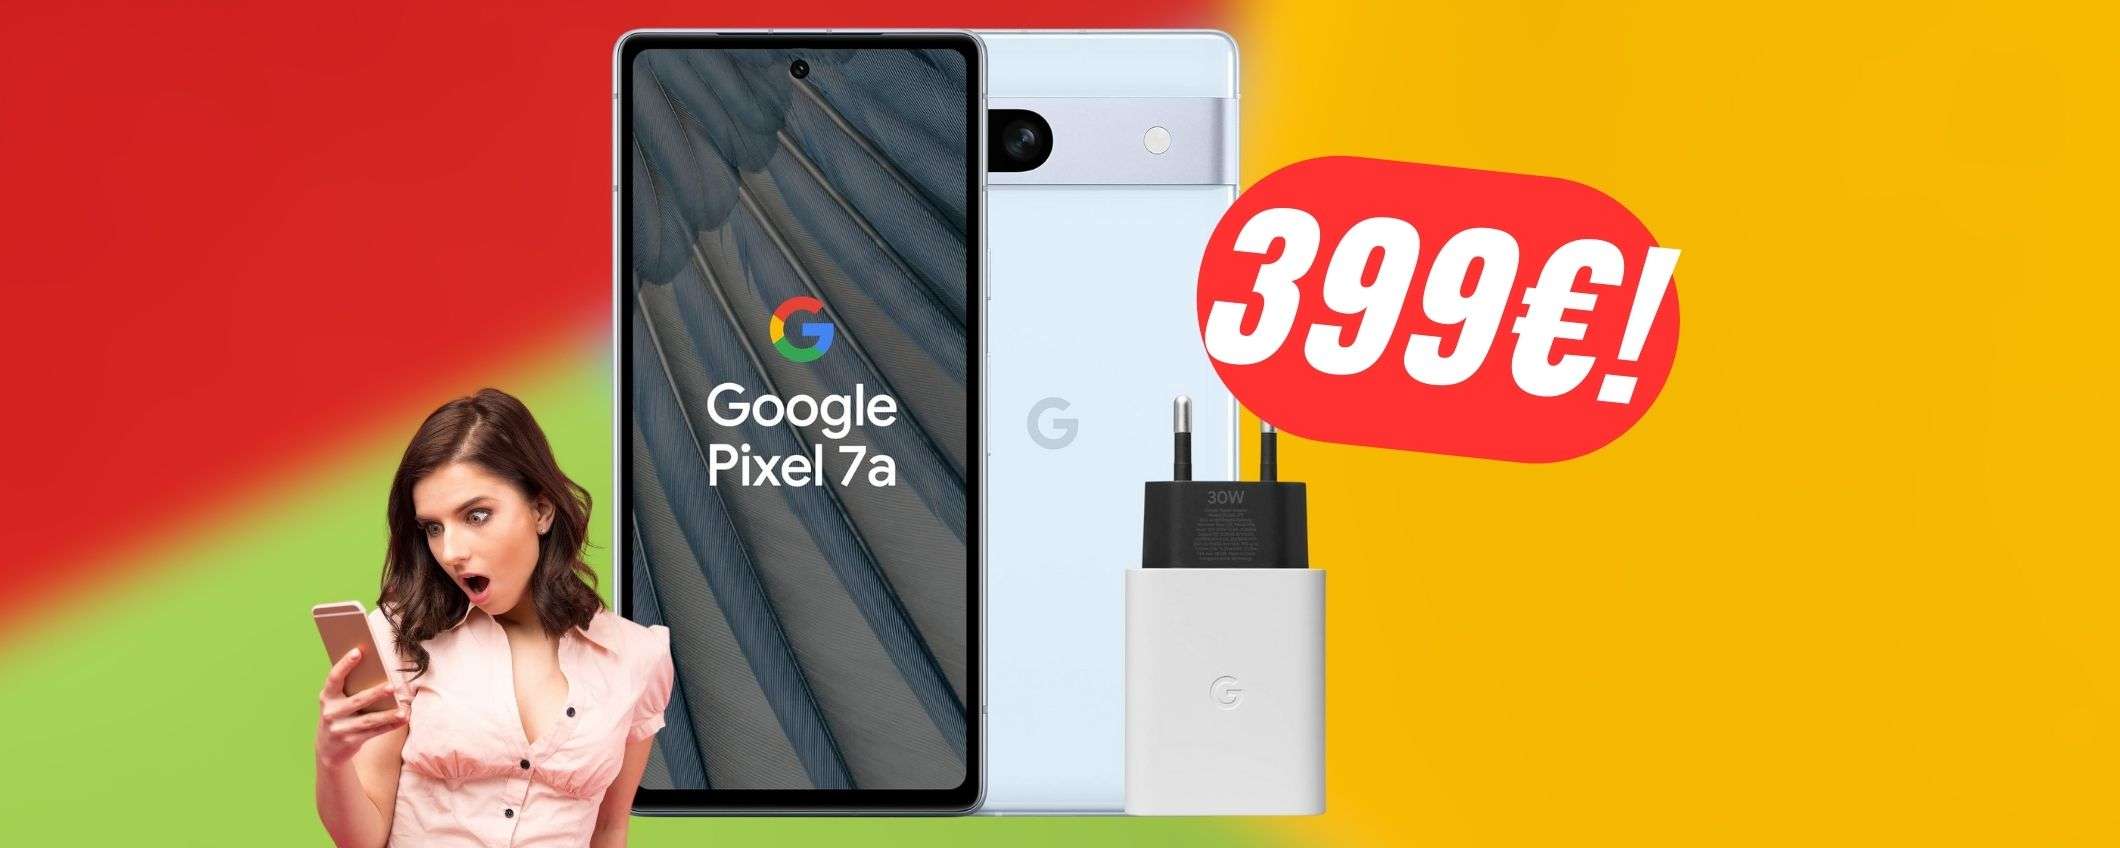 Google Pixel 7a è il miglior smartphone Android a questo prezzo!